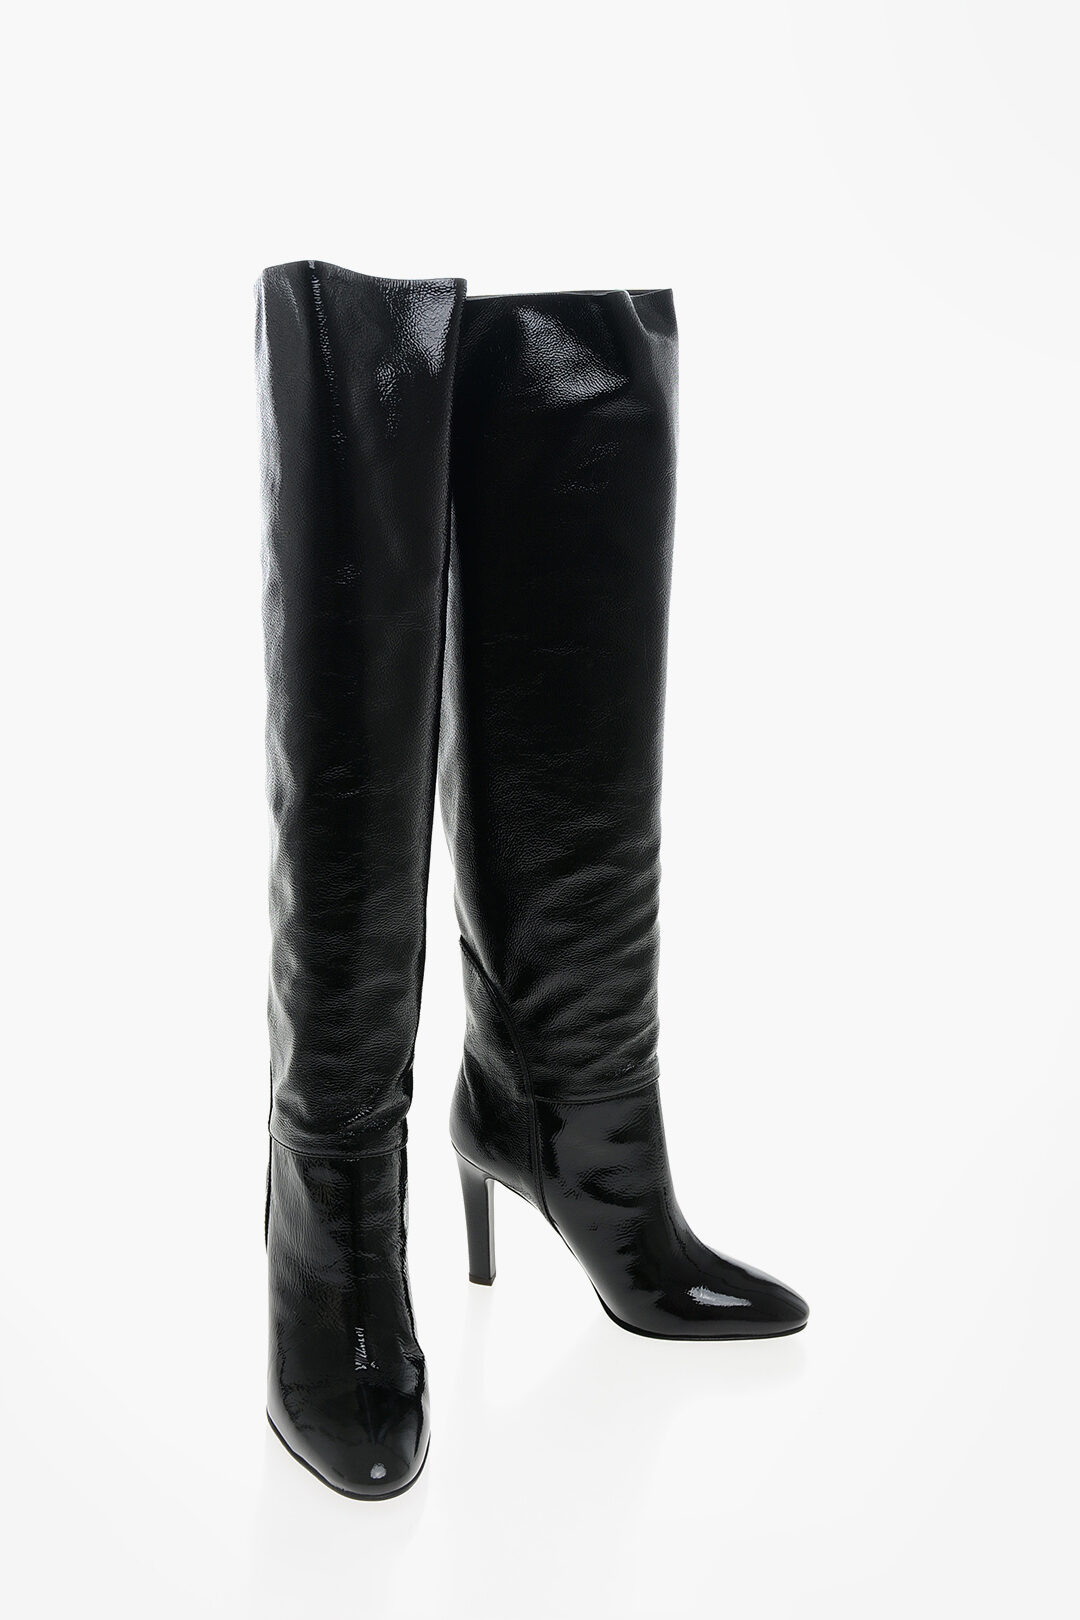 Giuseppe Zanotti Patent Leather KUBRICK Over the Boots 10cm women - Glamood